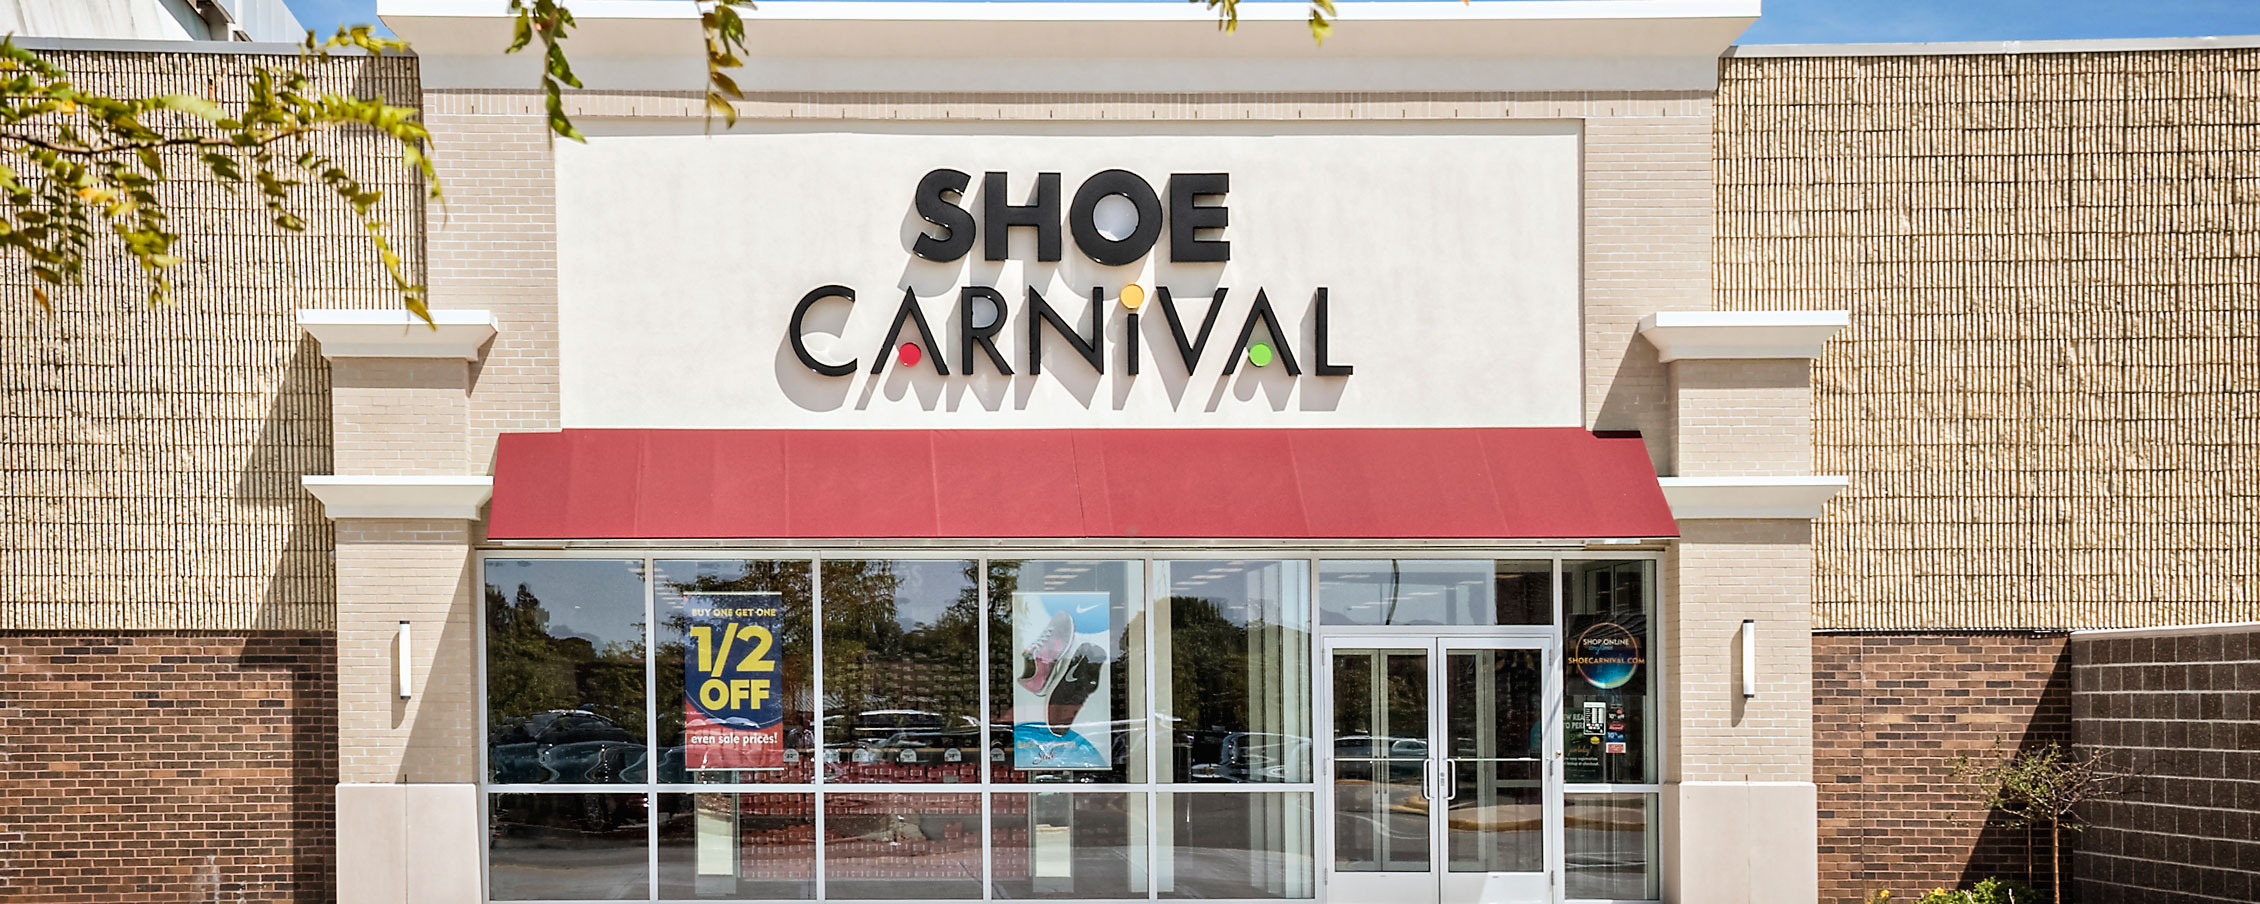 shoe carnival non slip